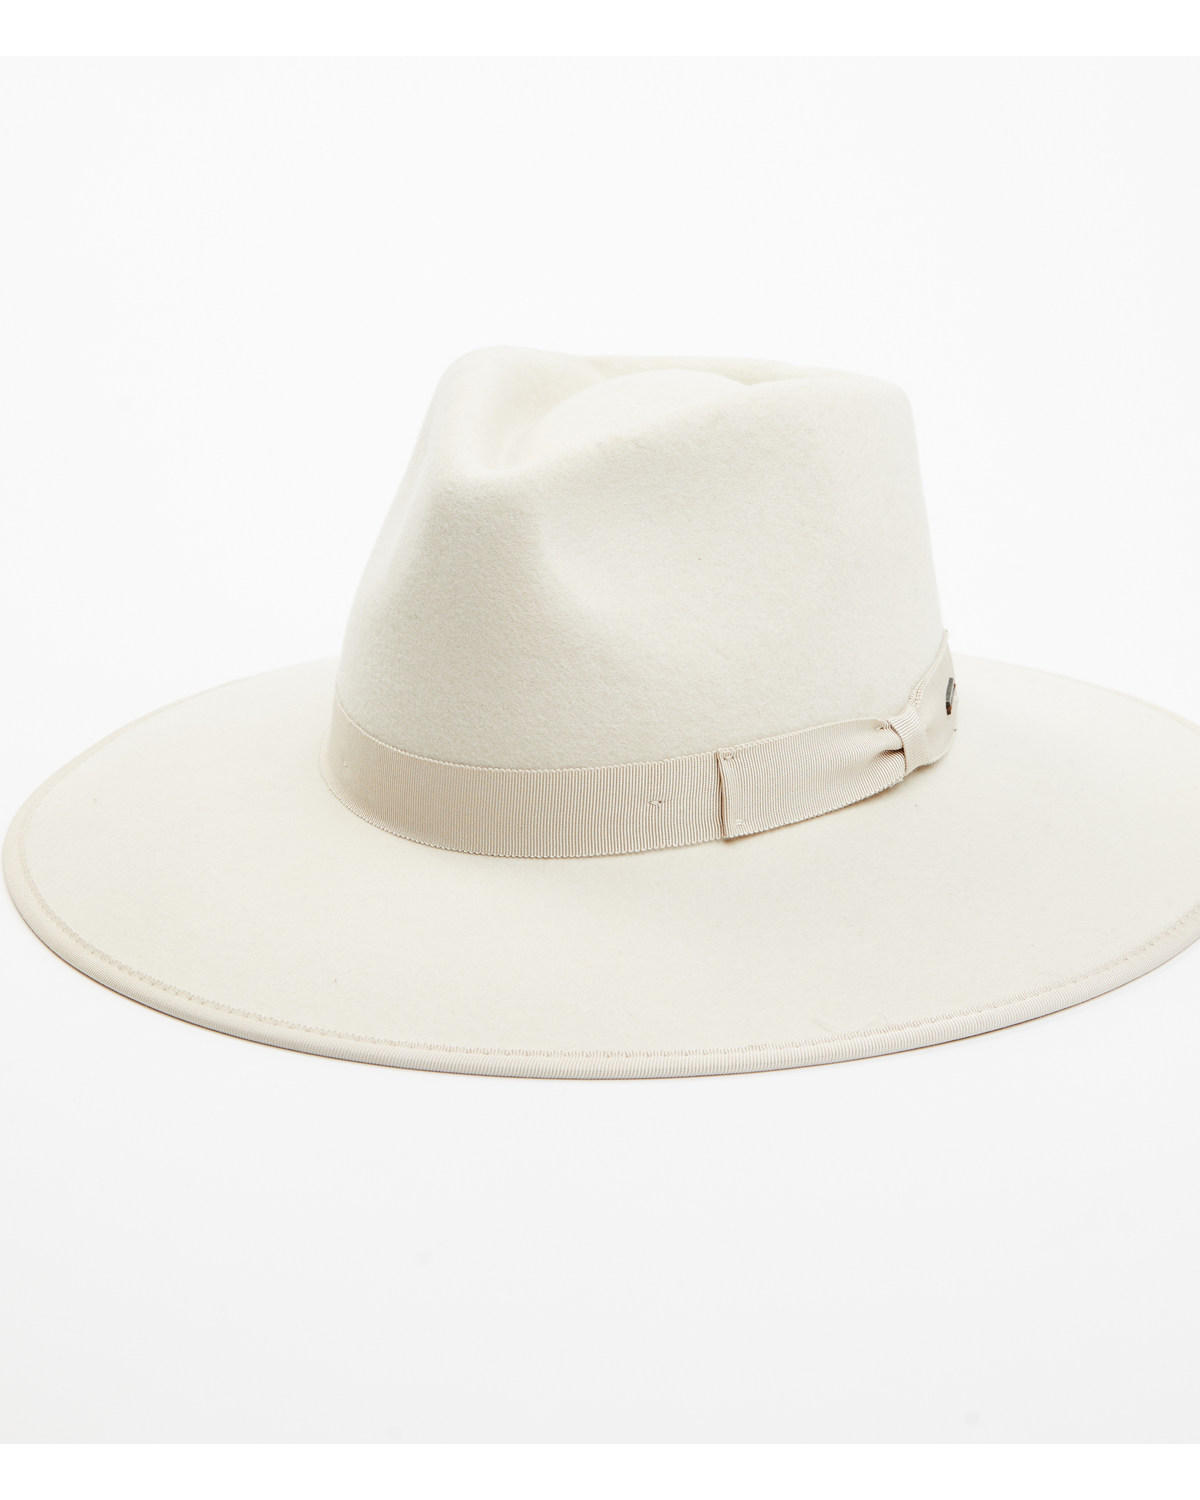 Brixton Women's Jo Rancher Felt Western Fashion Hat